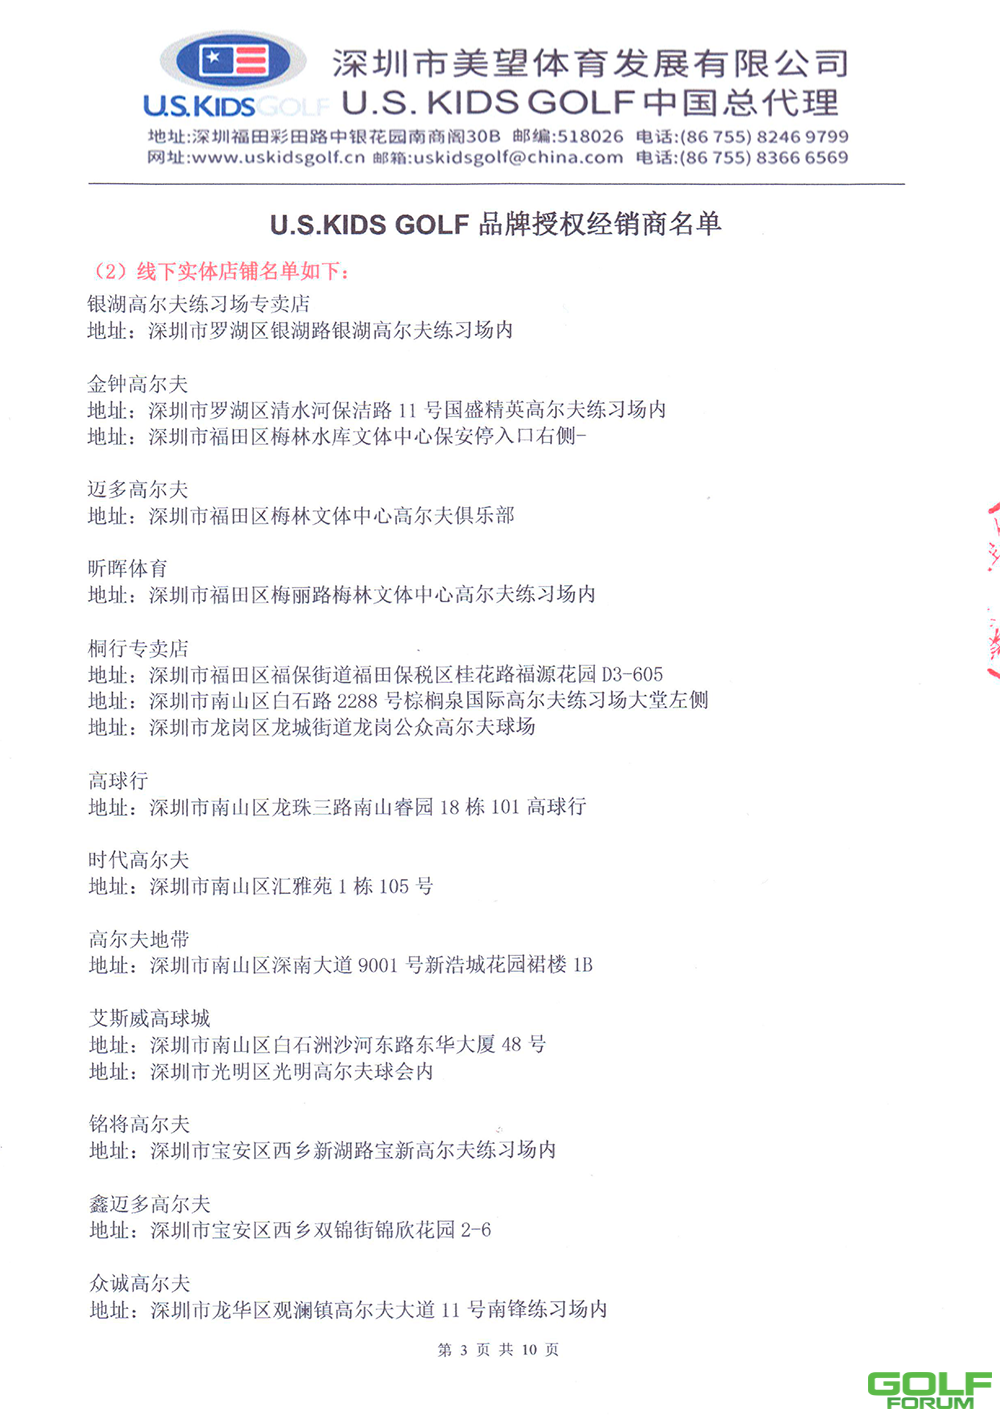 U.S.KIDSGOLF品牌中国总代理官方声明(更新)